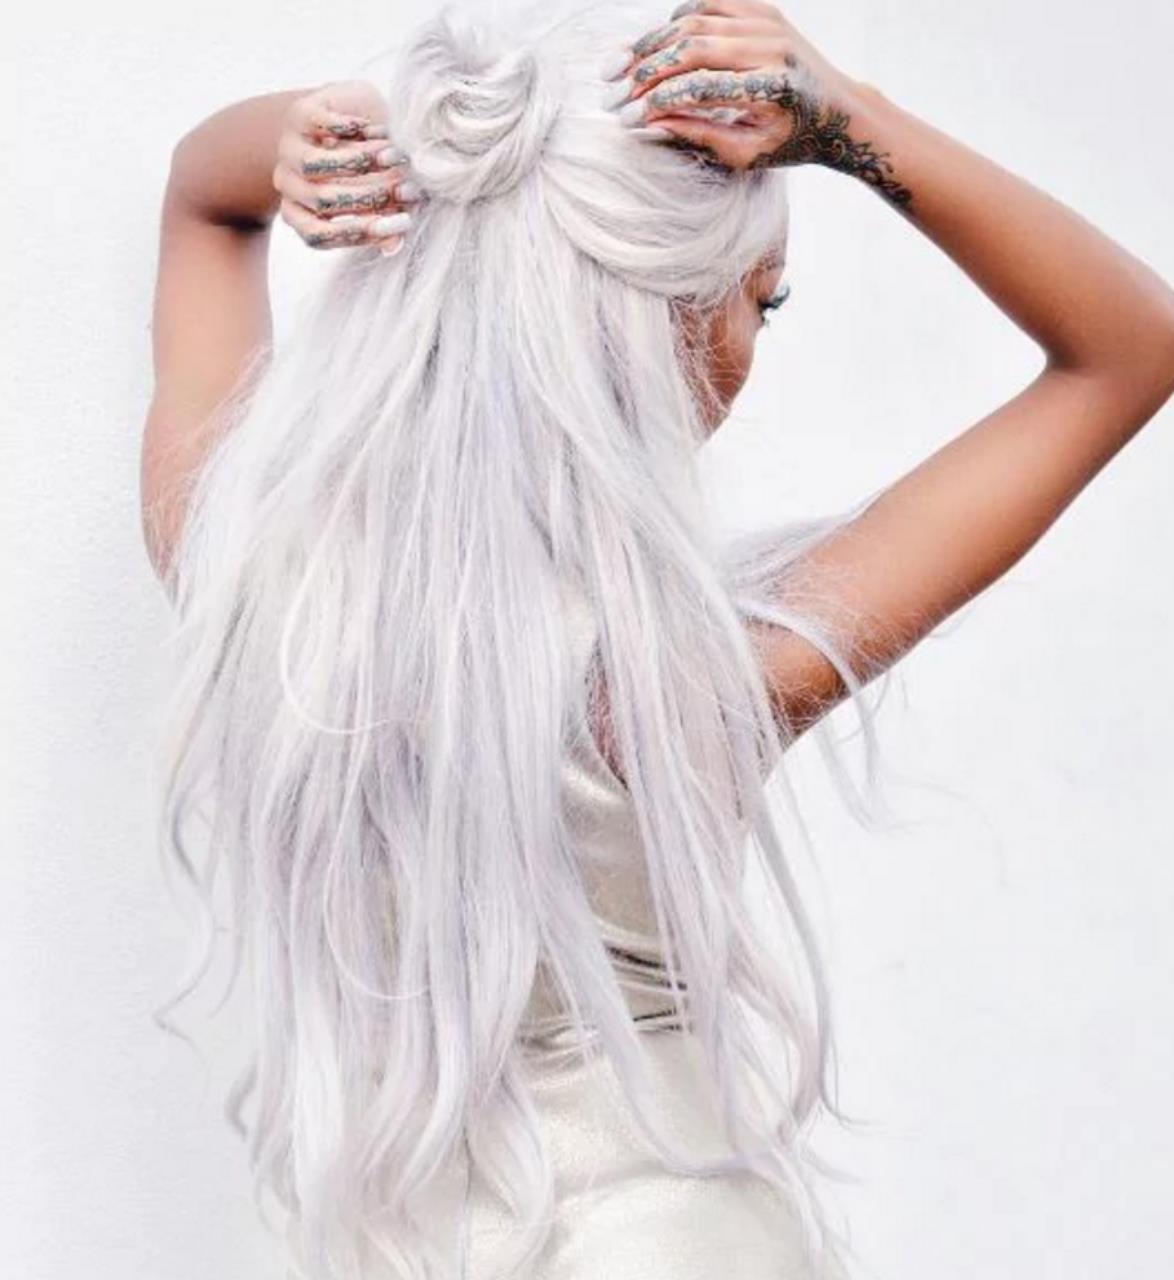 Фото девушки с белыми волосами со спины